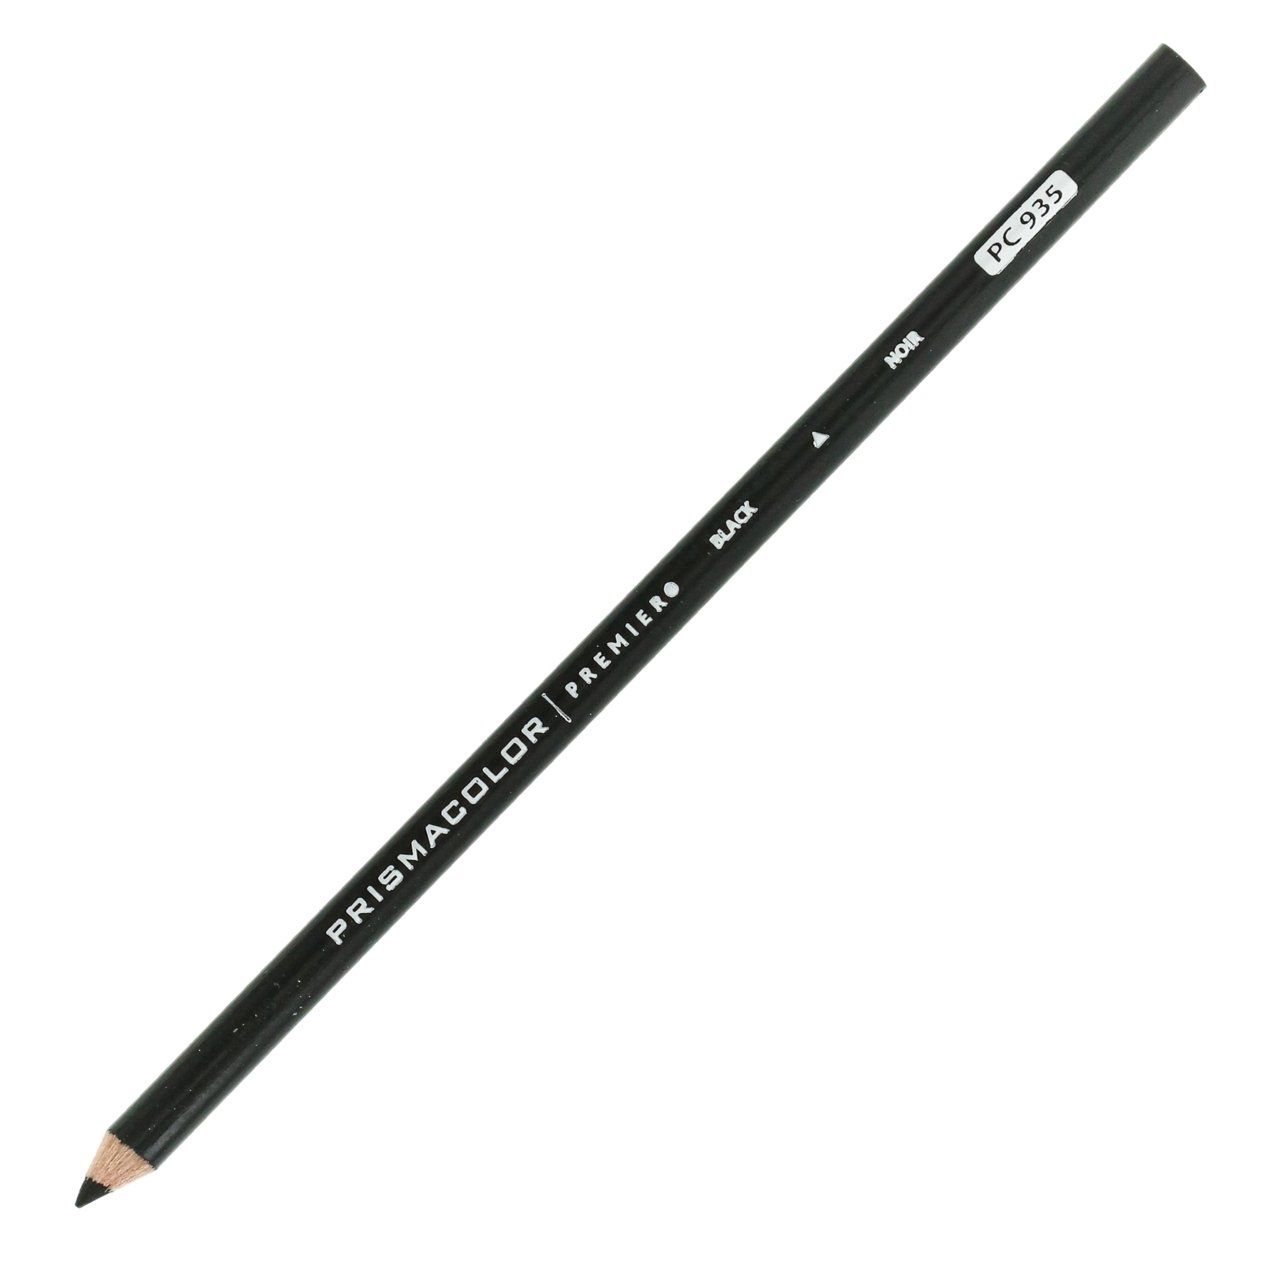 PRISMACOLOR: Premier Colored Pencil